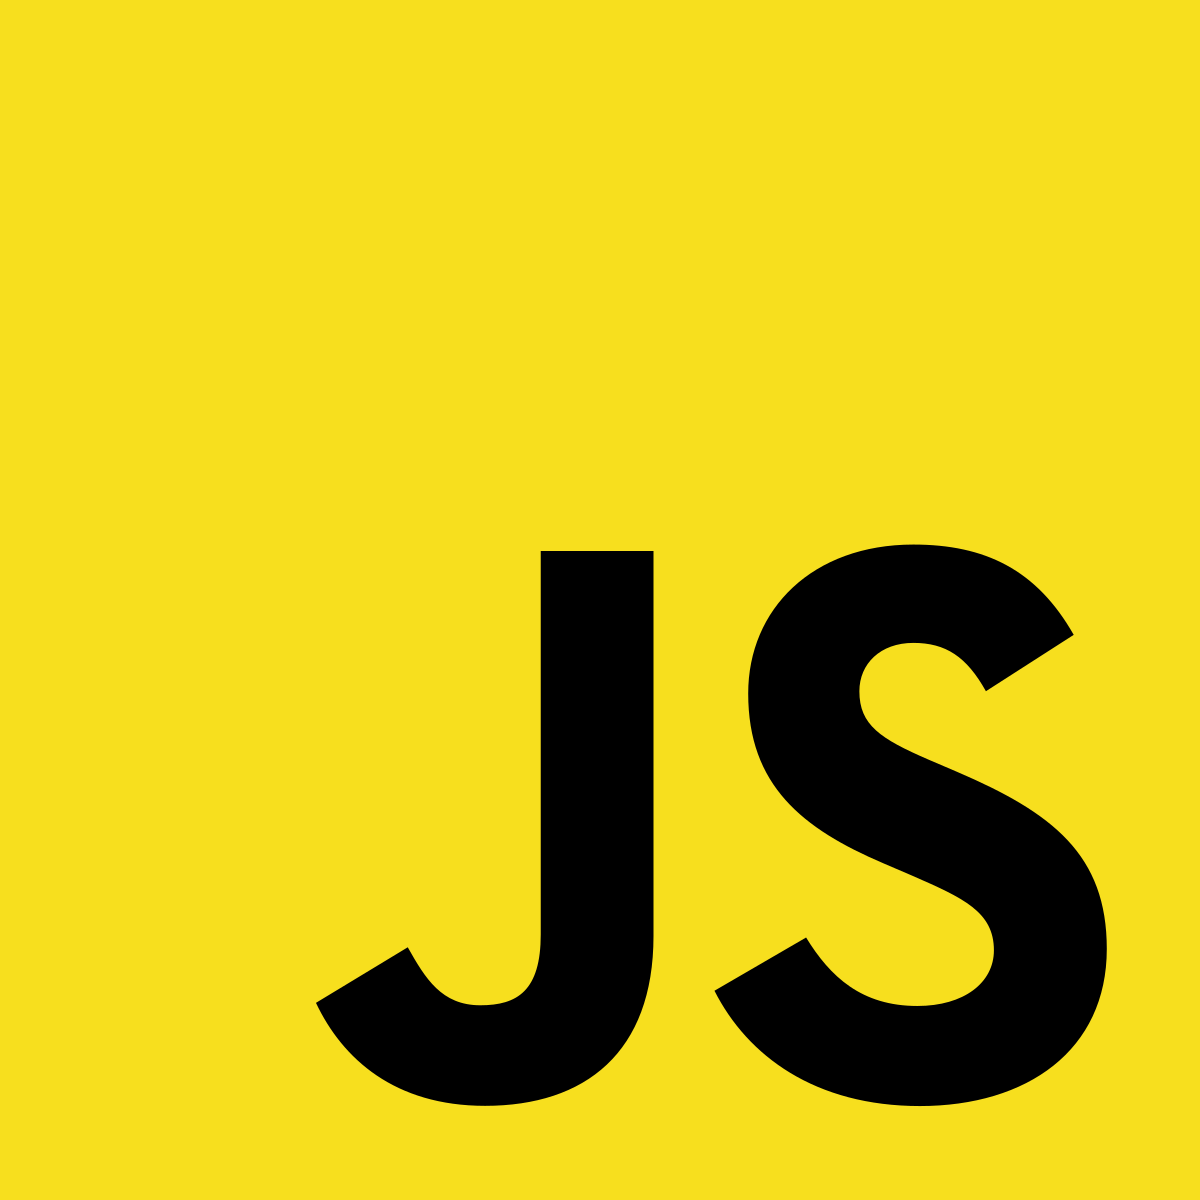 logo_javascript.png